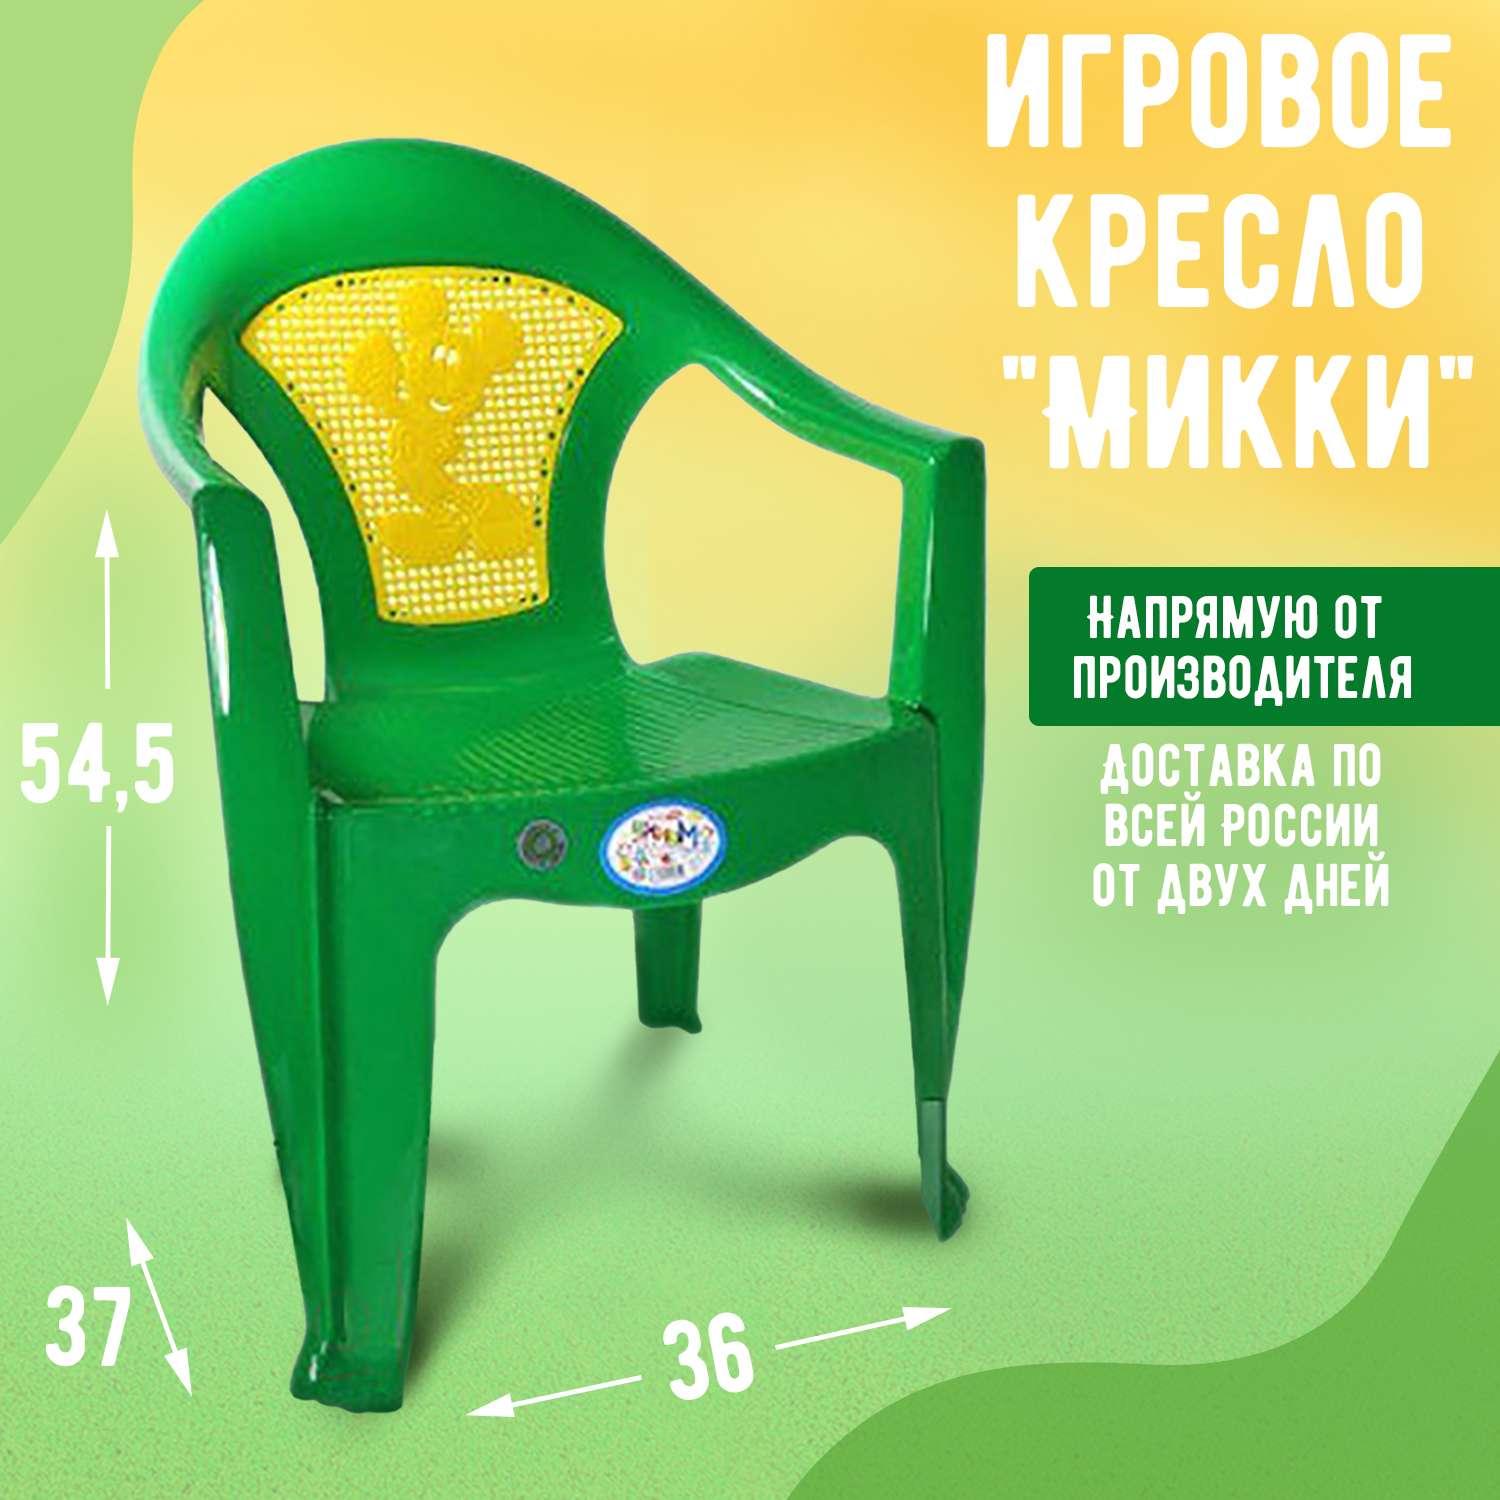 Кресло-стульчик elfplast детский Микки зеленый - фото 2